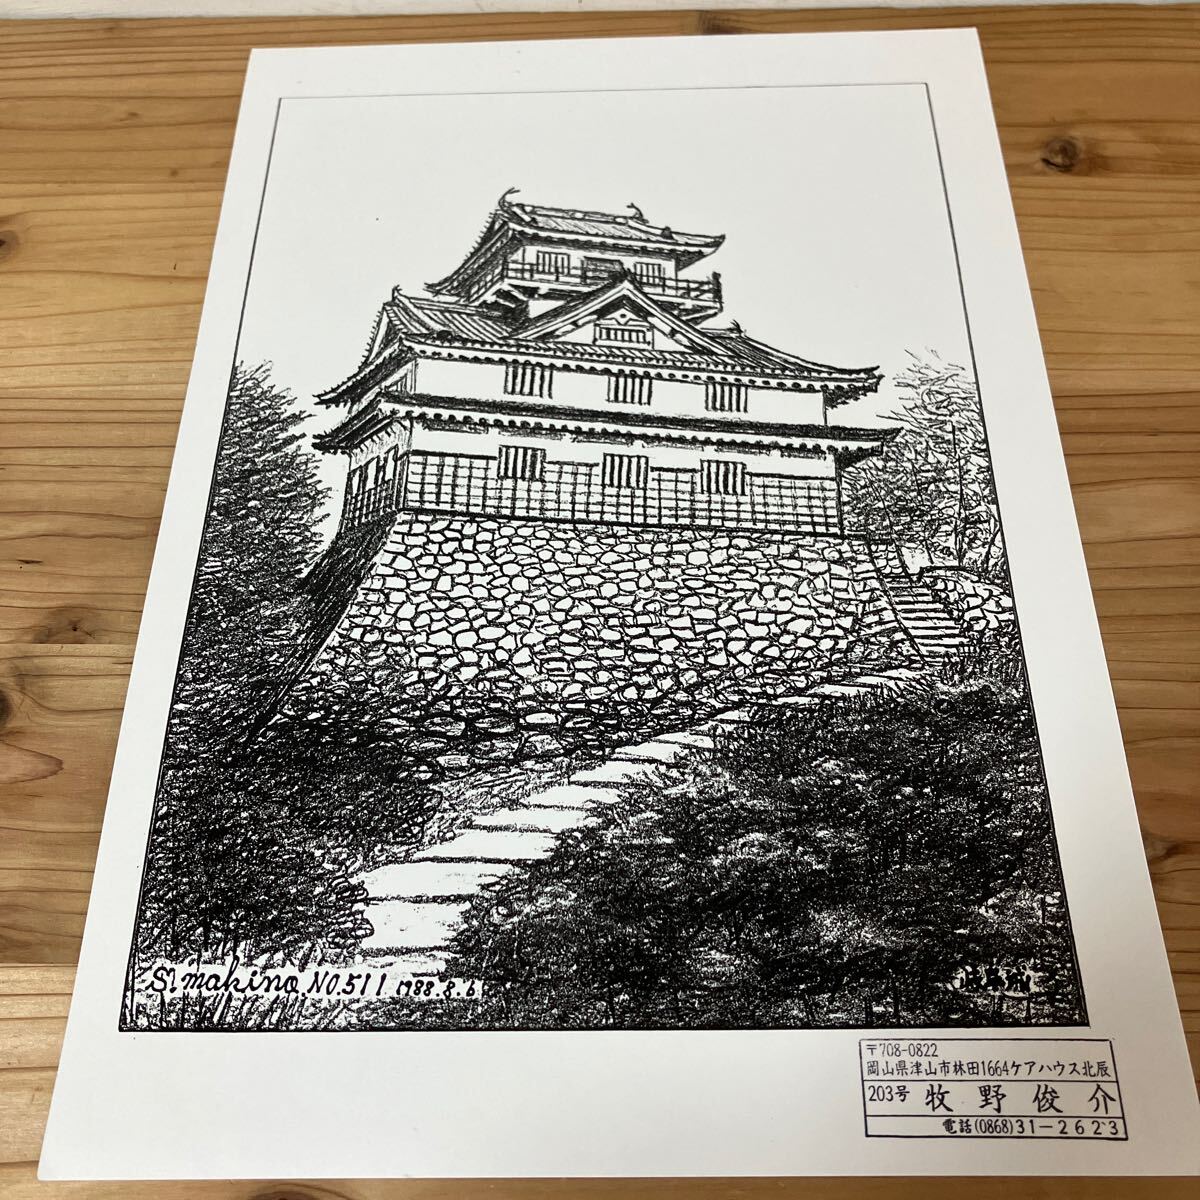 Mawo H0305 [Shunsuke Makino Castillo Gifu NO.511 Impresión de dibujo a lápiz] 1988, obra de arte, cuadro, dibujo a lápiz, dibujo al carbón